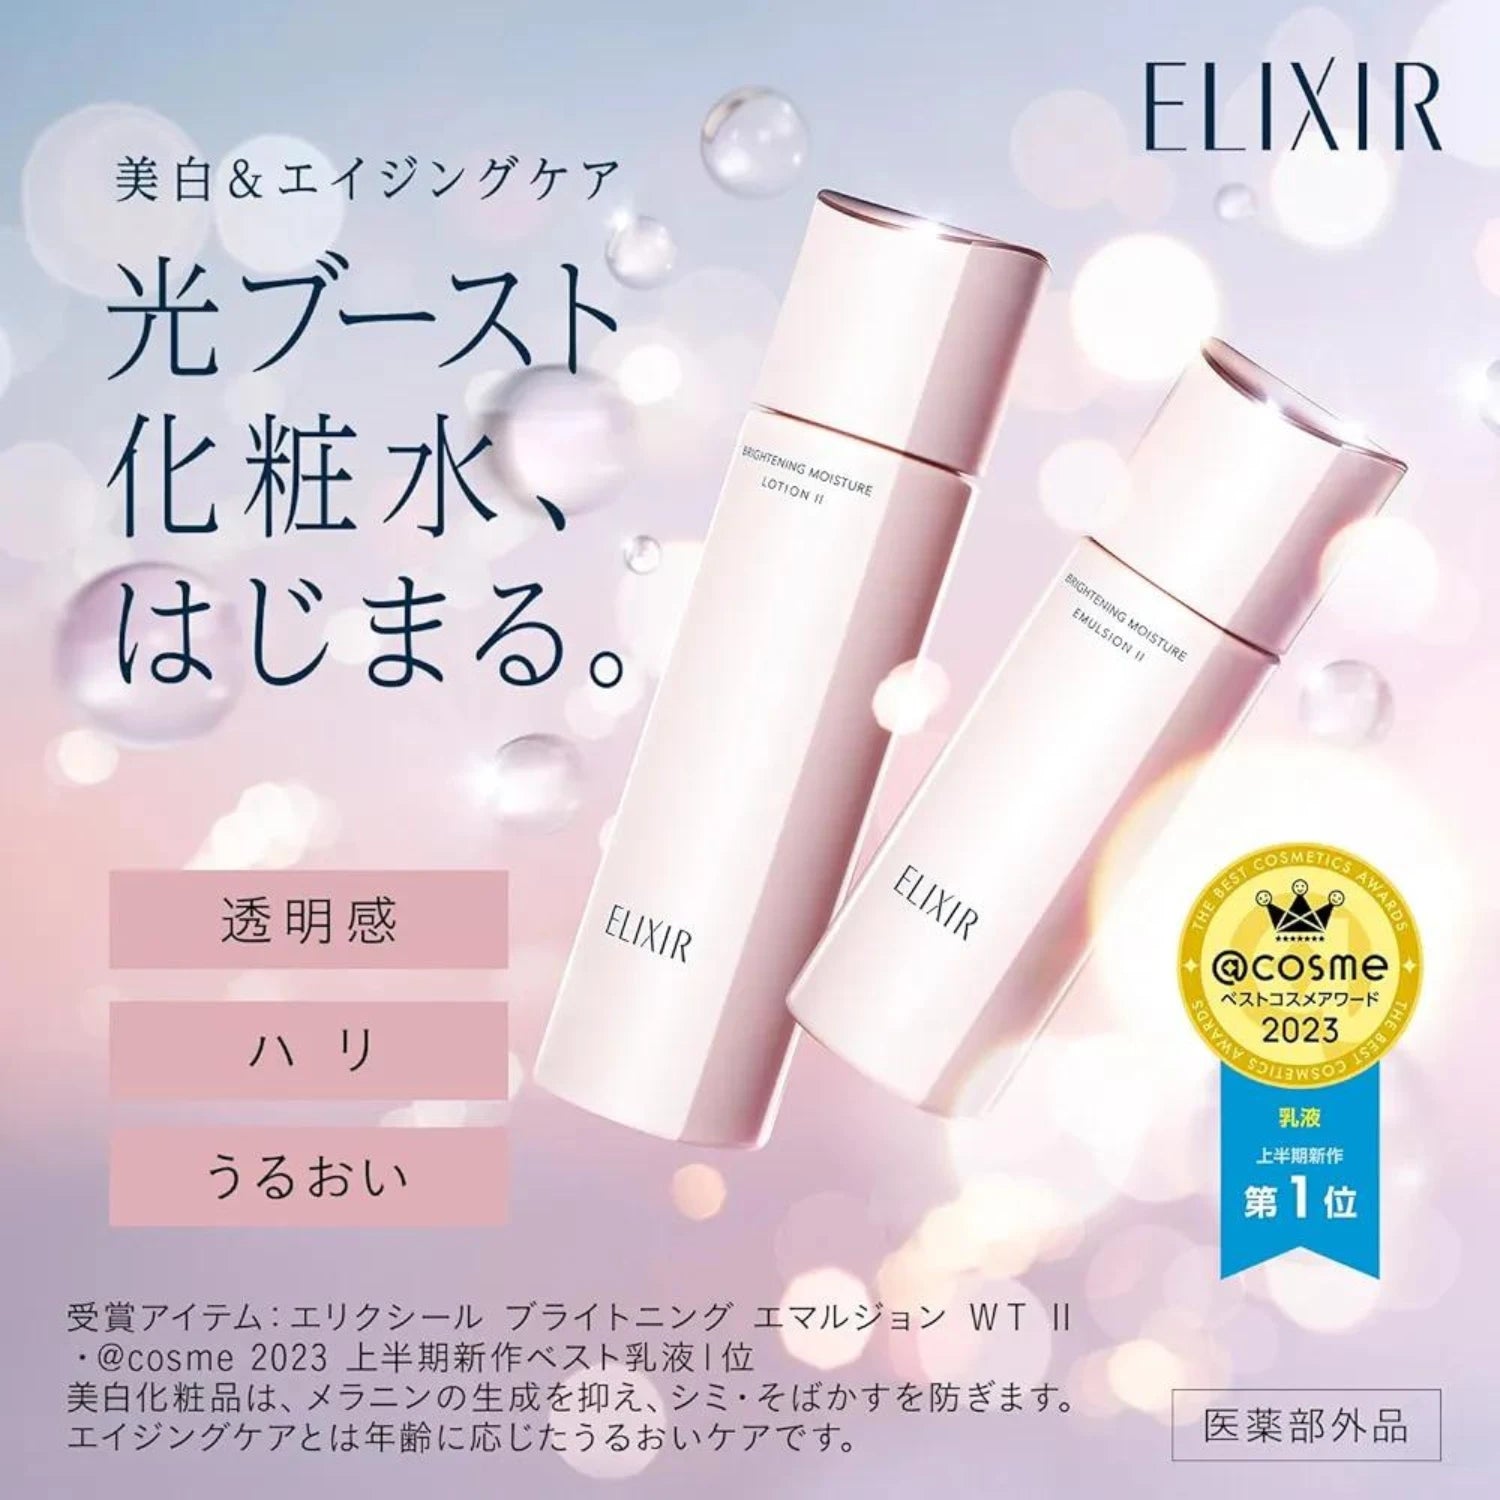 Shiseido Elixir Brightening Moisture Emulsion II 130ml - Buy Me Japan